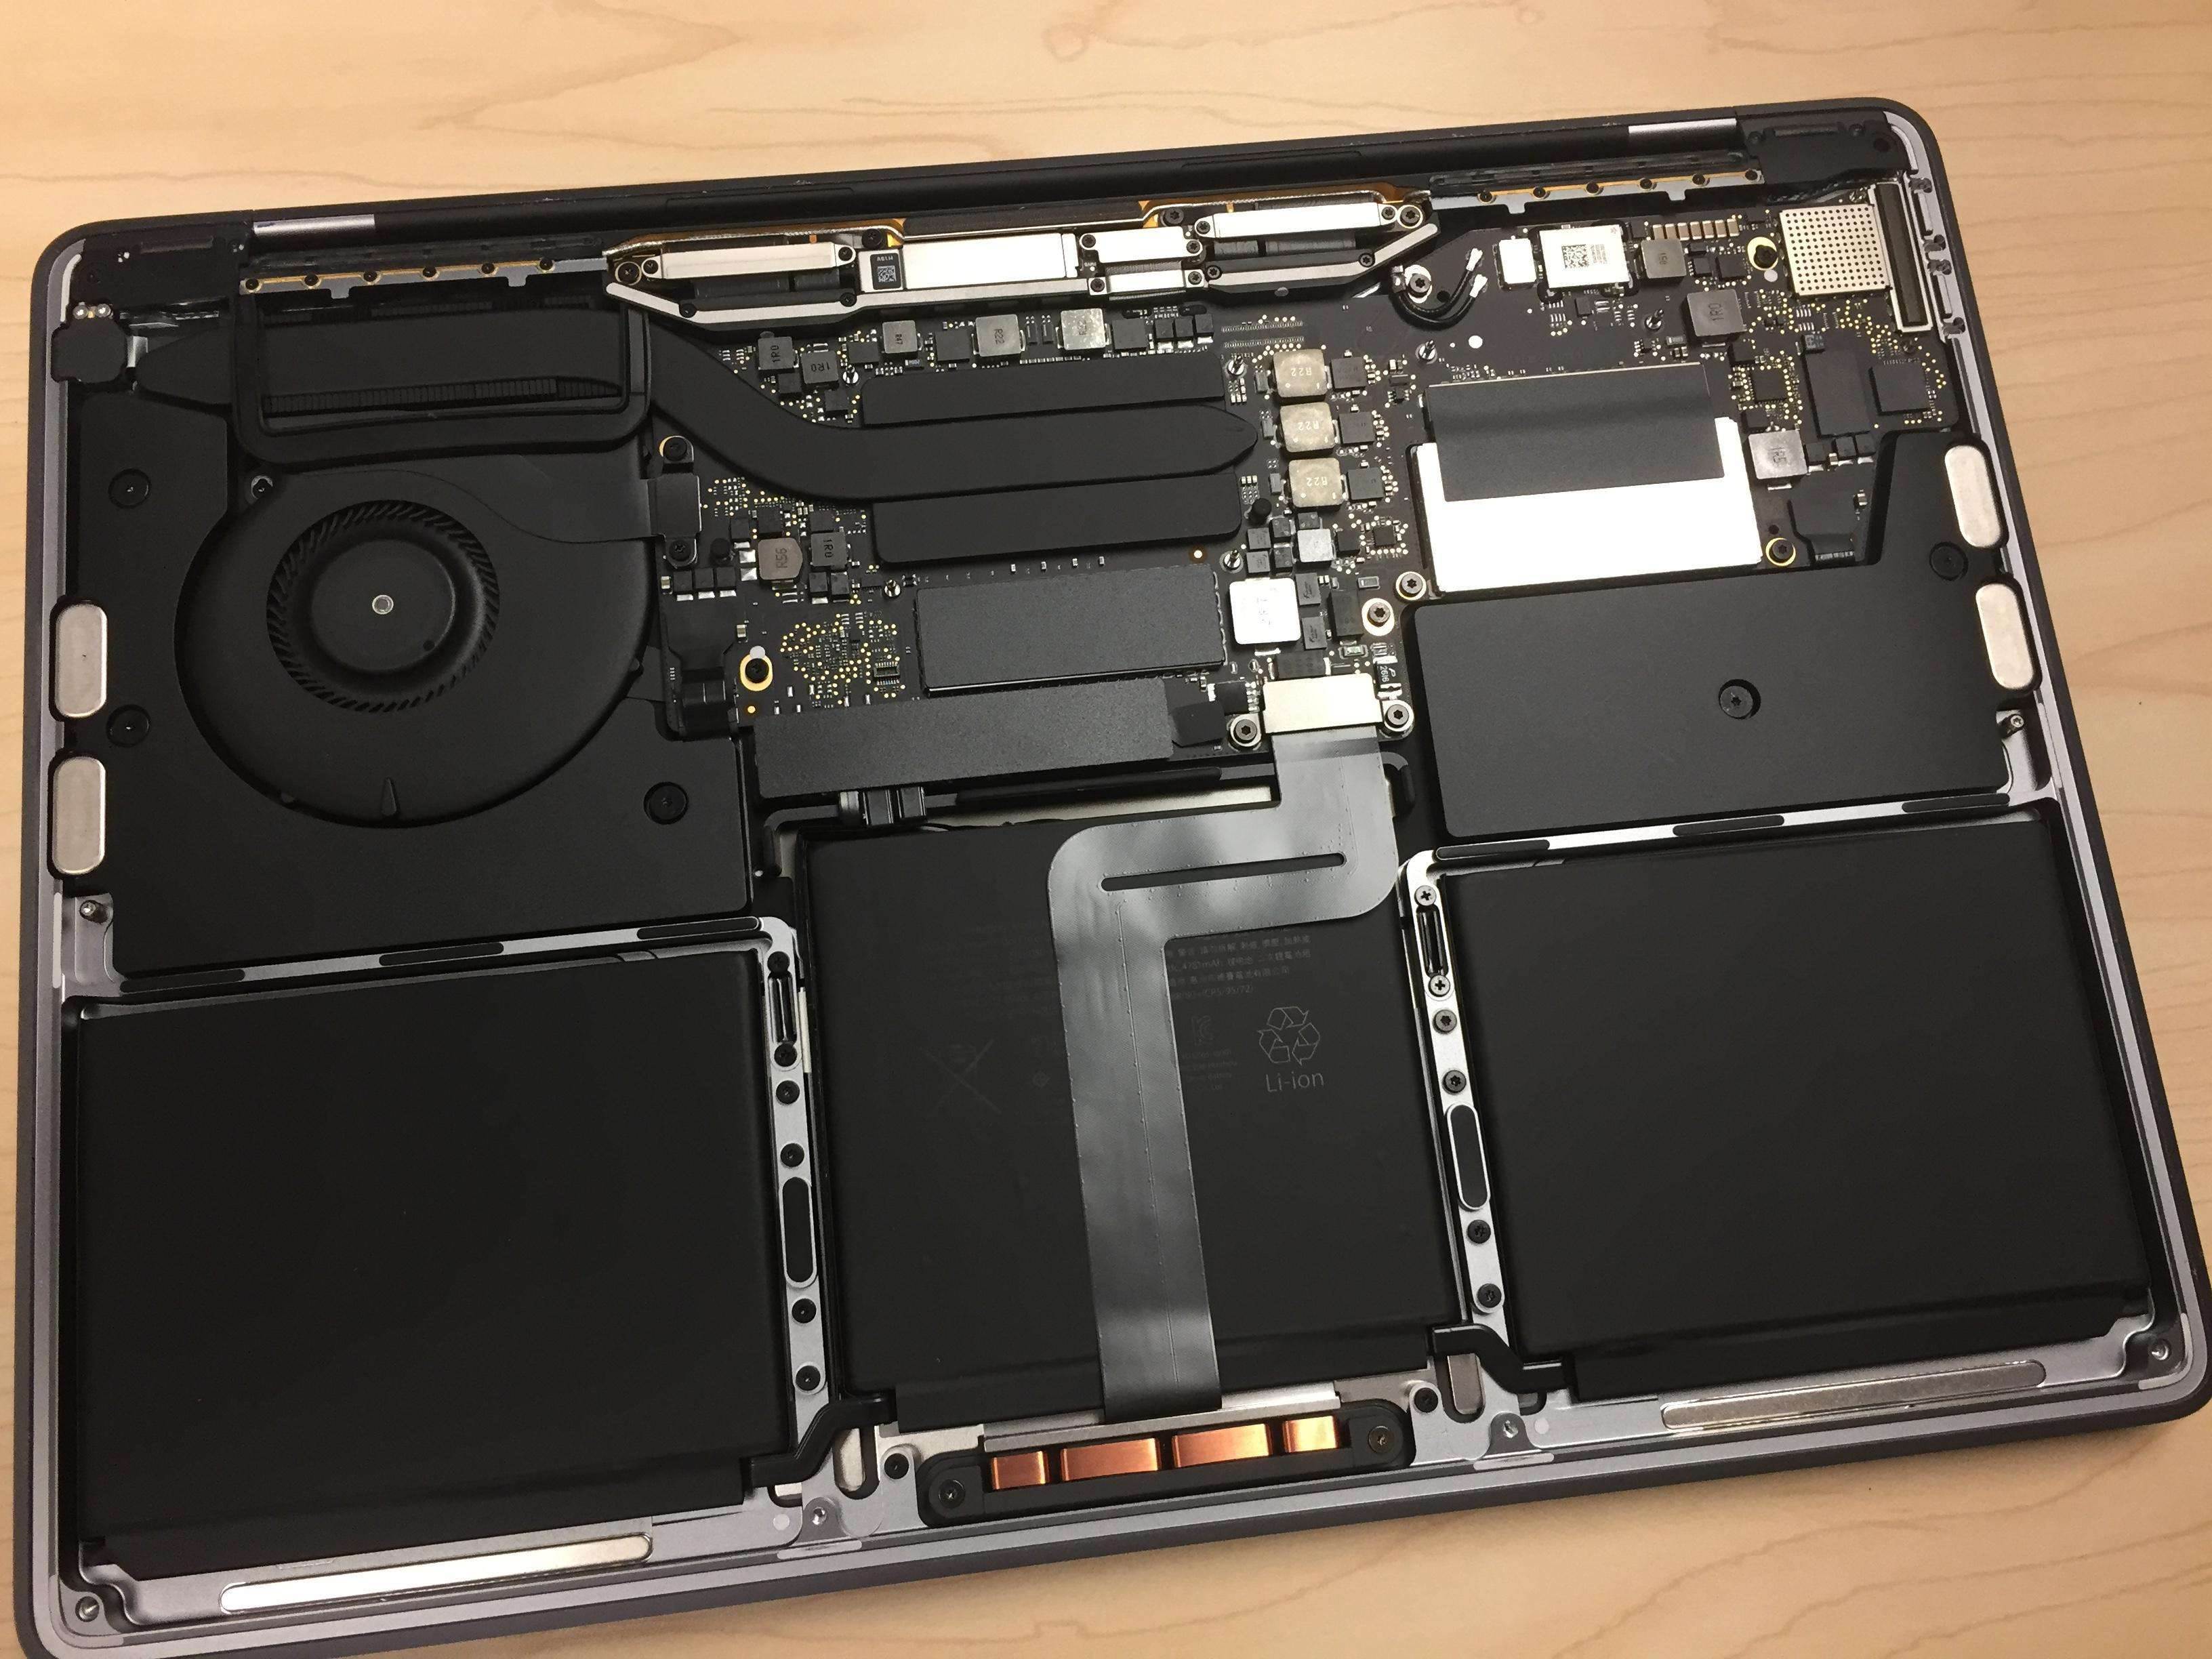 W podstawowym modelu MacBooku Pro 2016 można wymienić dysk SSD ciekawostki macbook pro 2016, MacBook Pro, dysk ssd w macbook pro 2016, Apple  Niedawno rozpocząłem testy dysku SSD w PlayStation 4 i, jak na razie jestem zadowolony z efektów pomimo mniejszej powierzchni na dane. owc macbook pro 2016 1322 teardown ssd